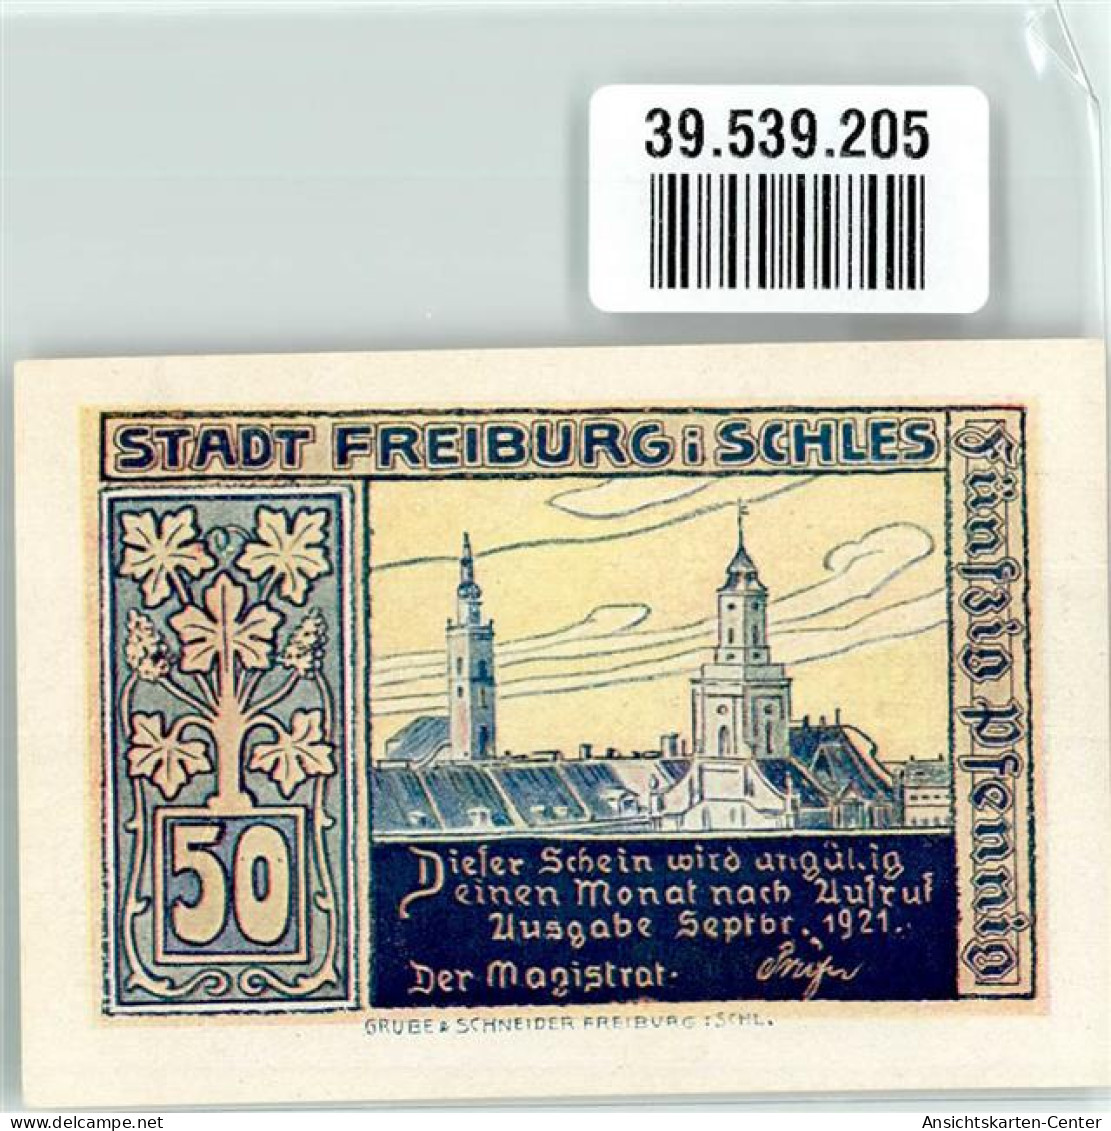 39539205 - Freiburg I. Schles. Swiebodzice - Poland